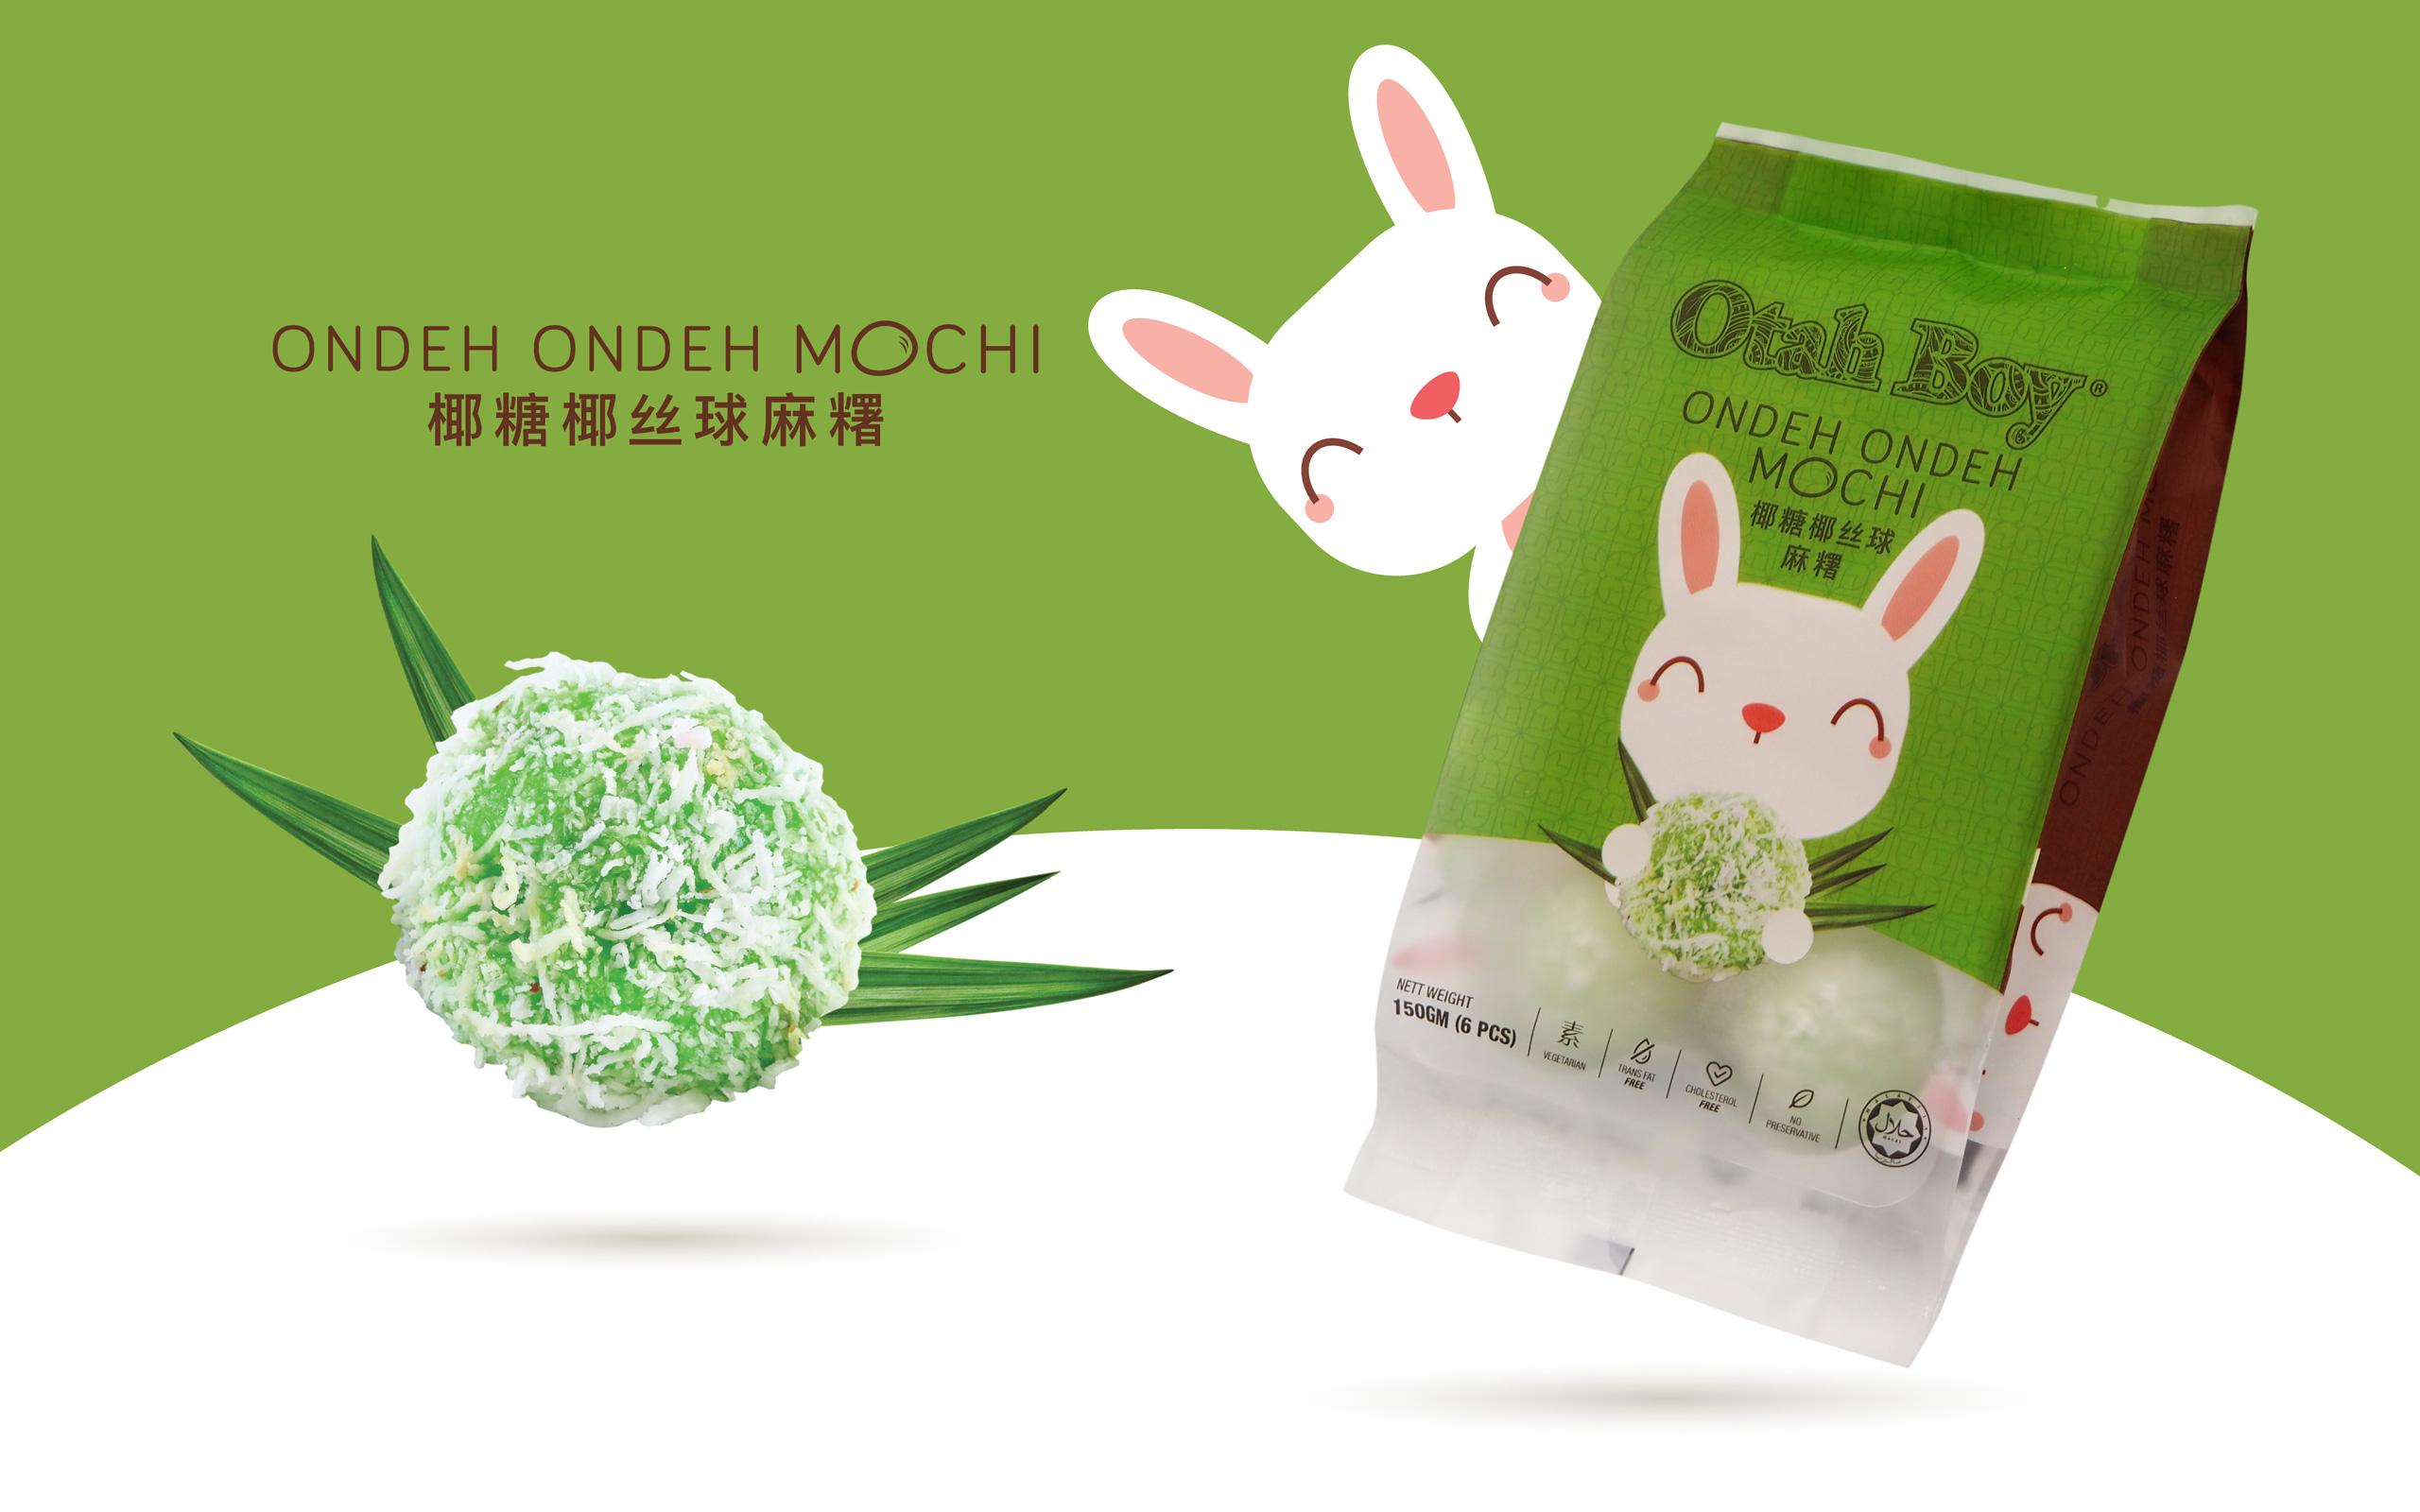 Otah Boy Mochi Packaging Design Malaysia